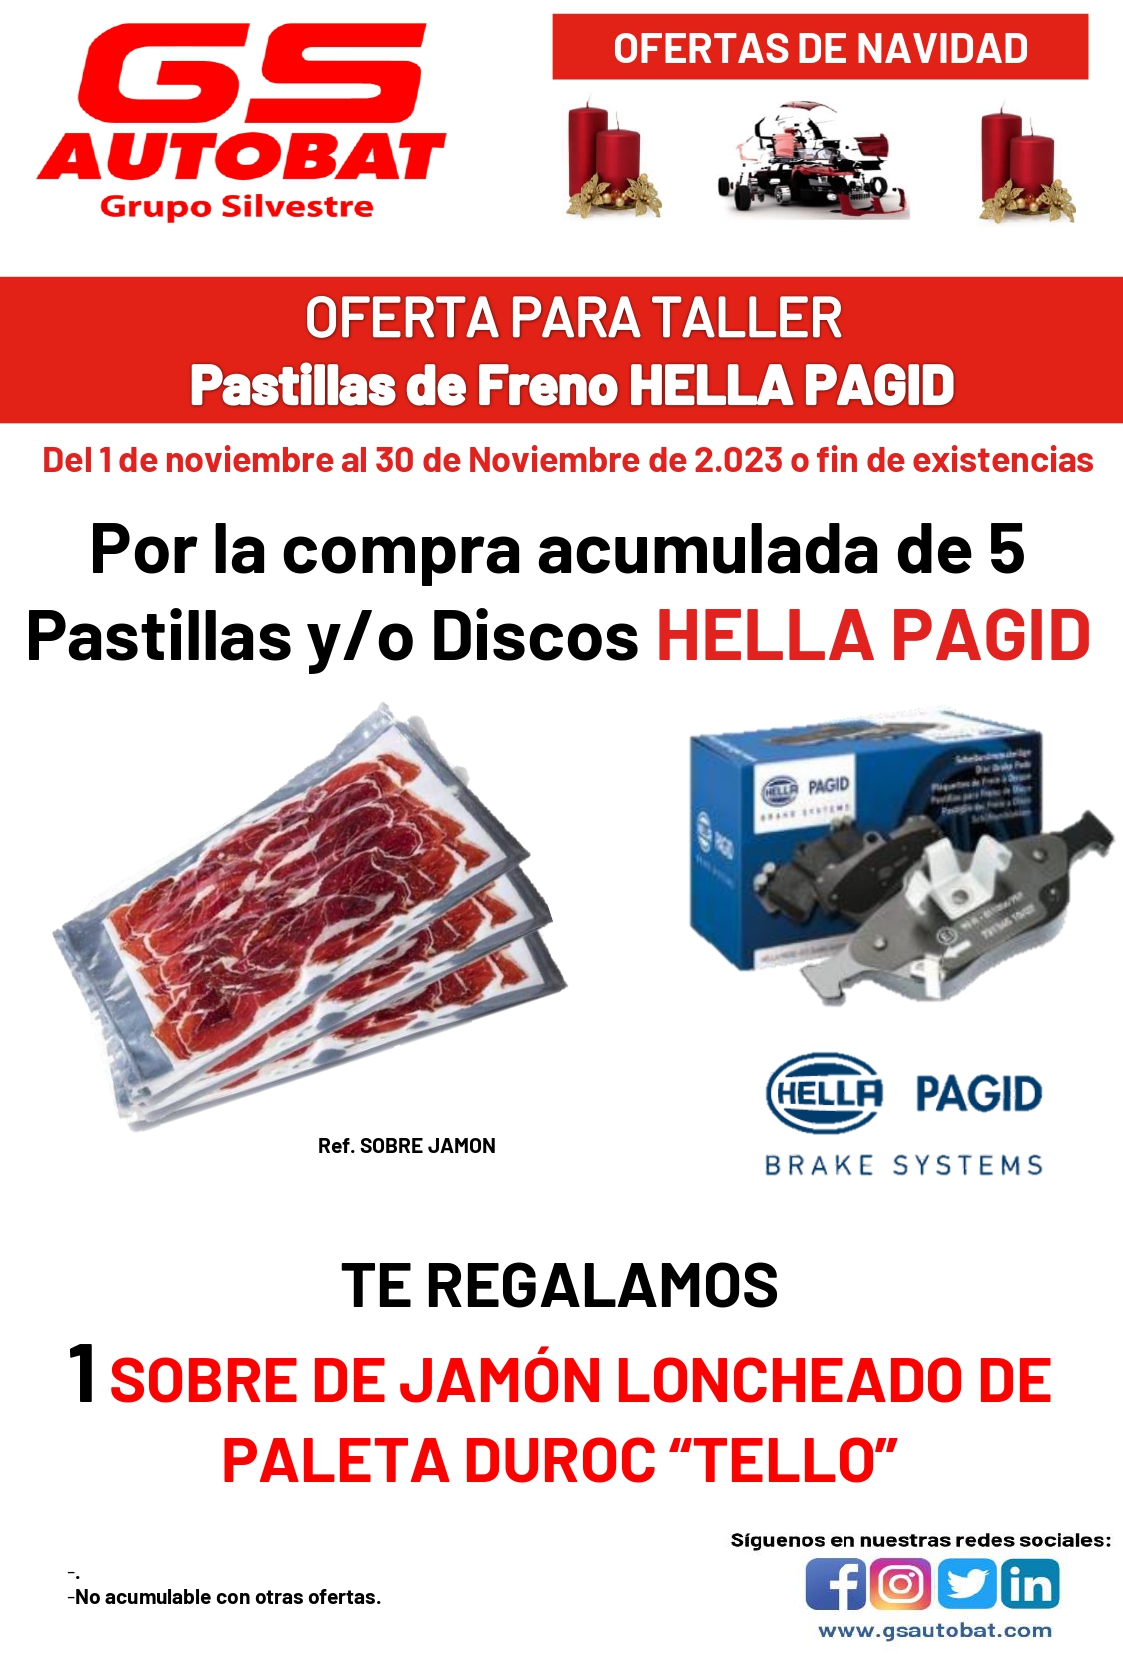 PASTILLAS Y DISCOS DE FRENO HELLA PAGID>